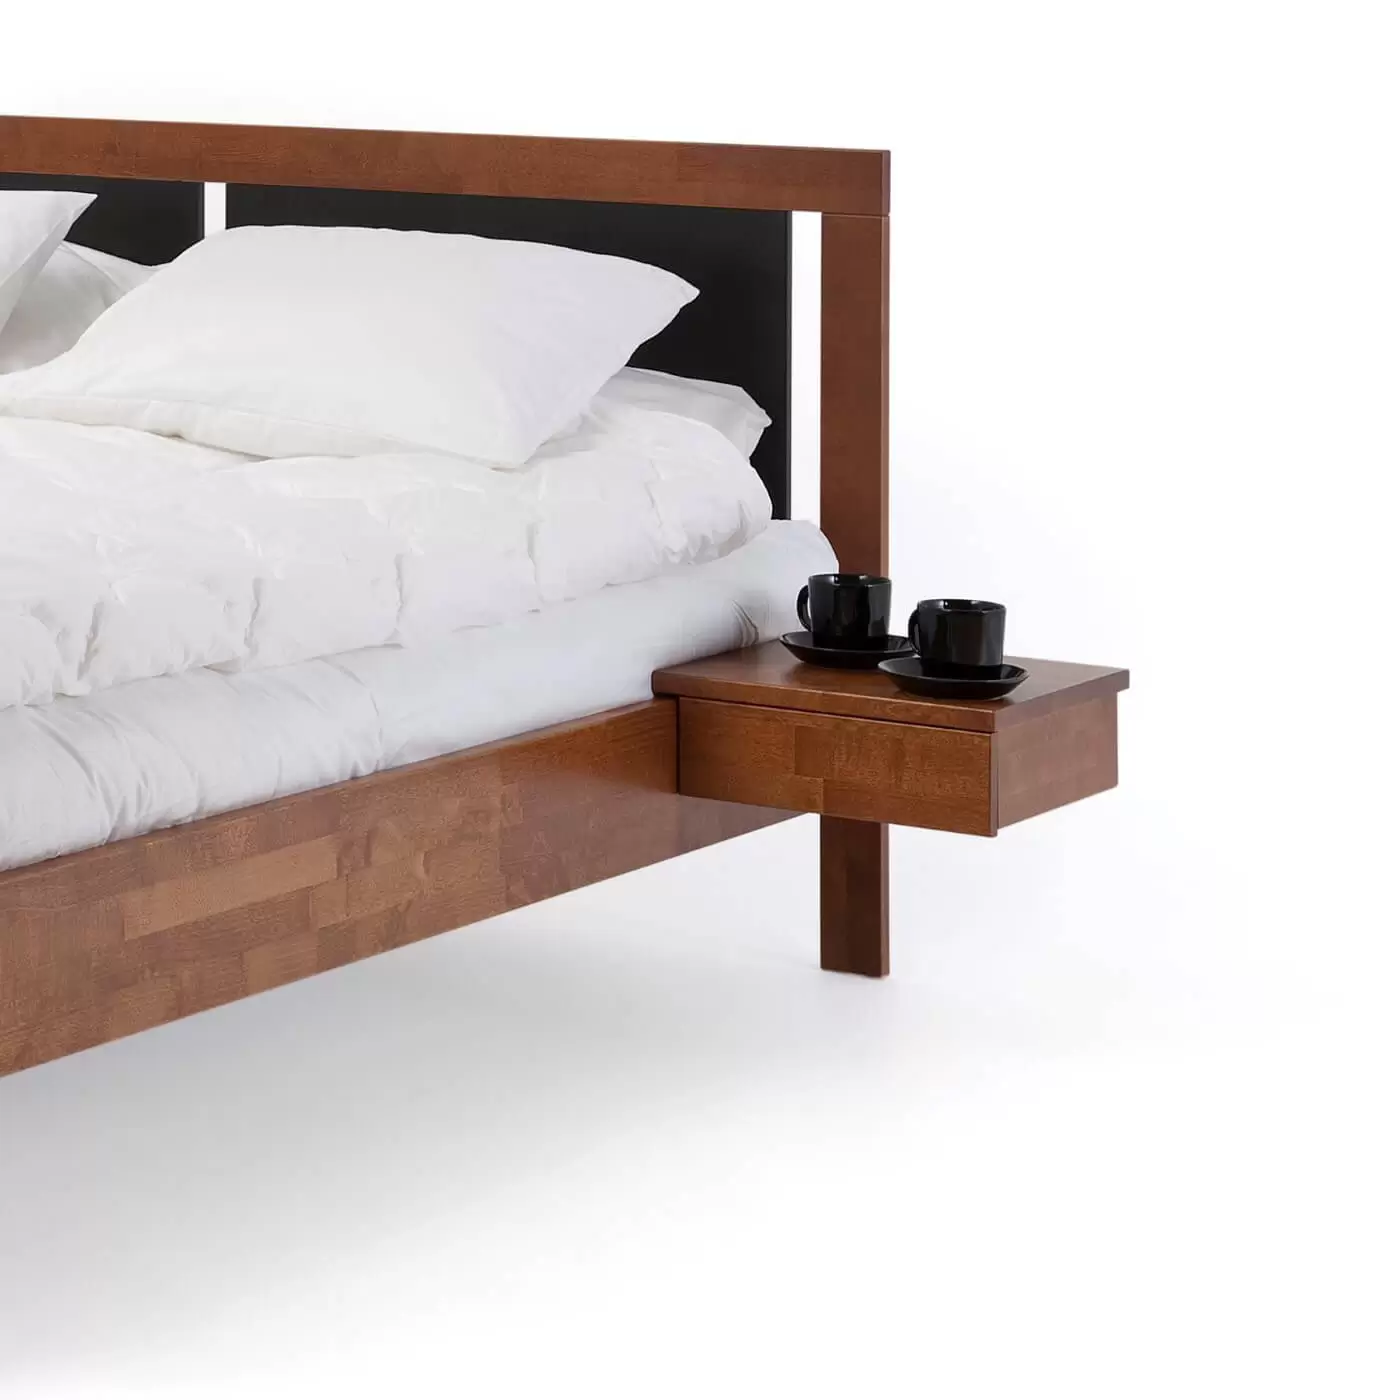 Stolik nocny orzech KOLI drewniany z szufladą. Przywieszony przy łóżku na którym leży biała pościel. Na stoliku wiszącym orzech stoją 2 czarne filiżanki. Skandynawski design